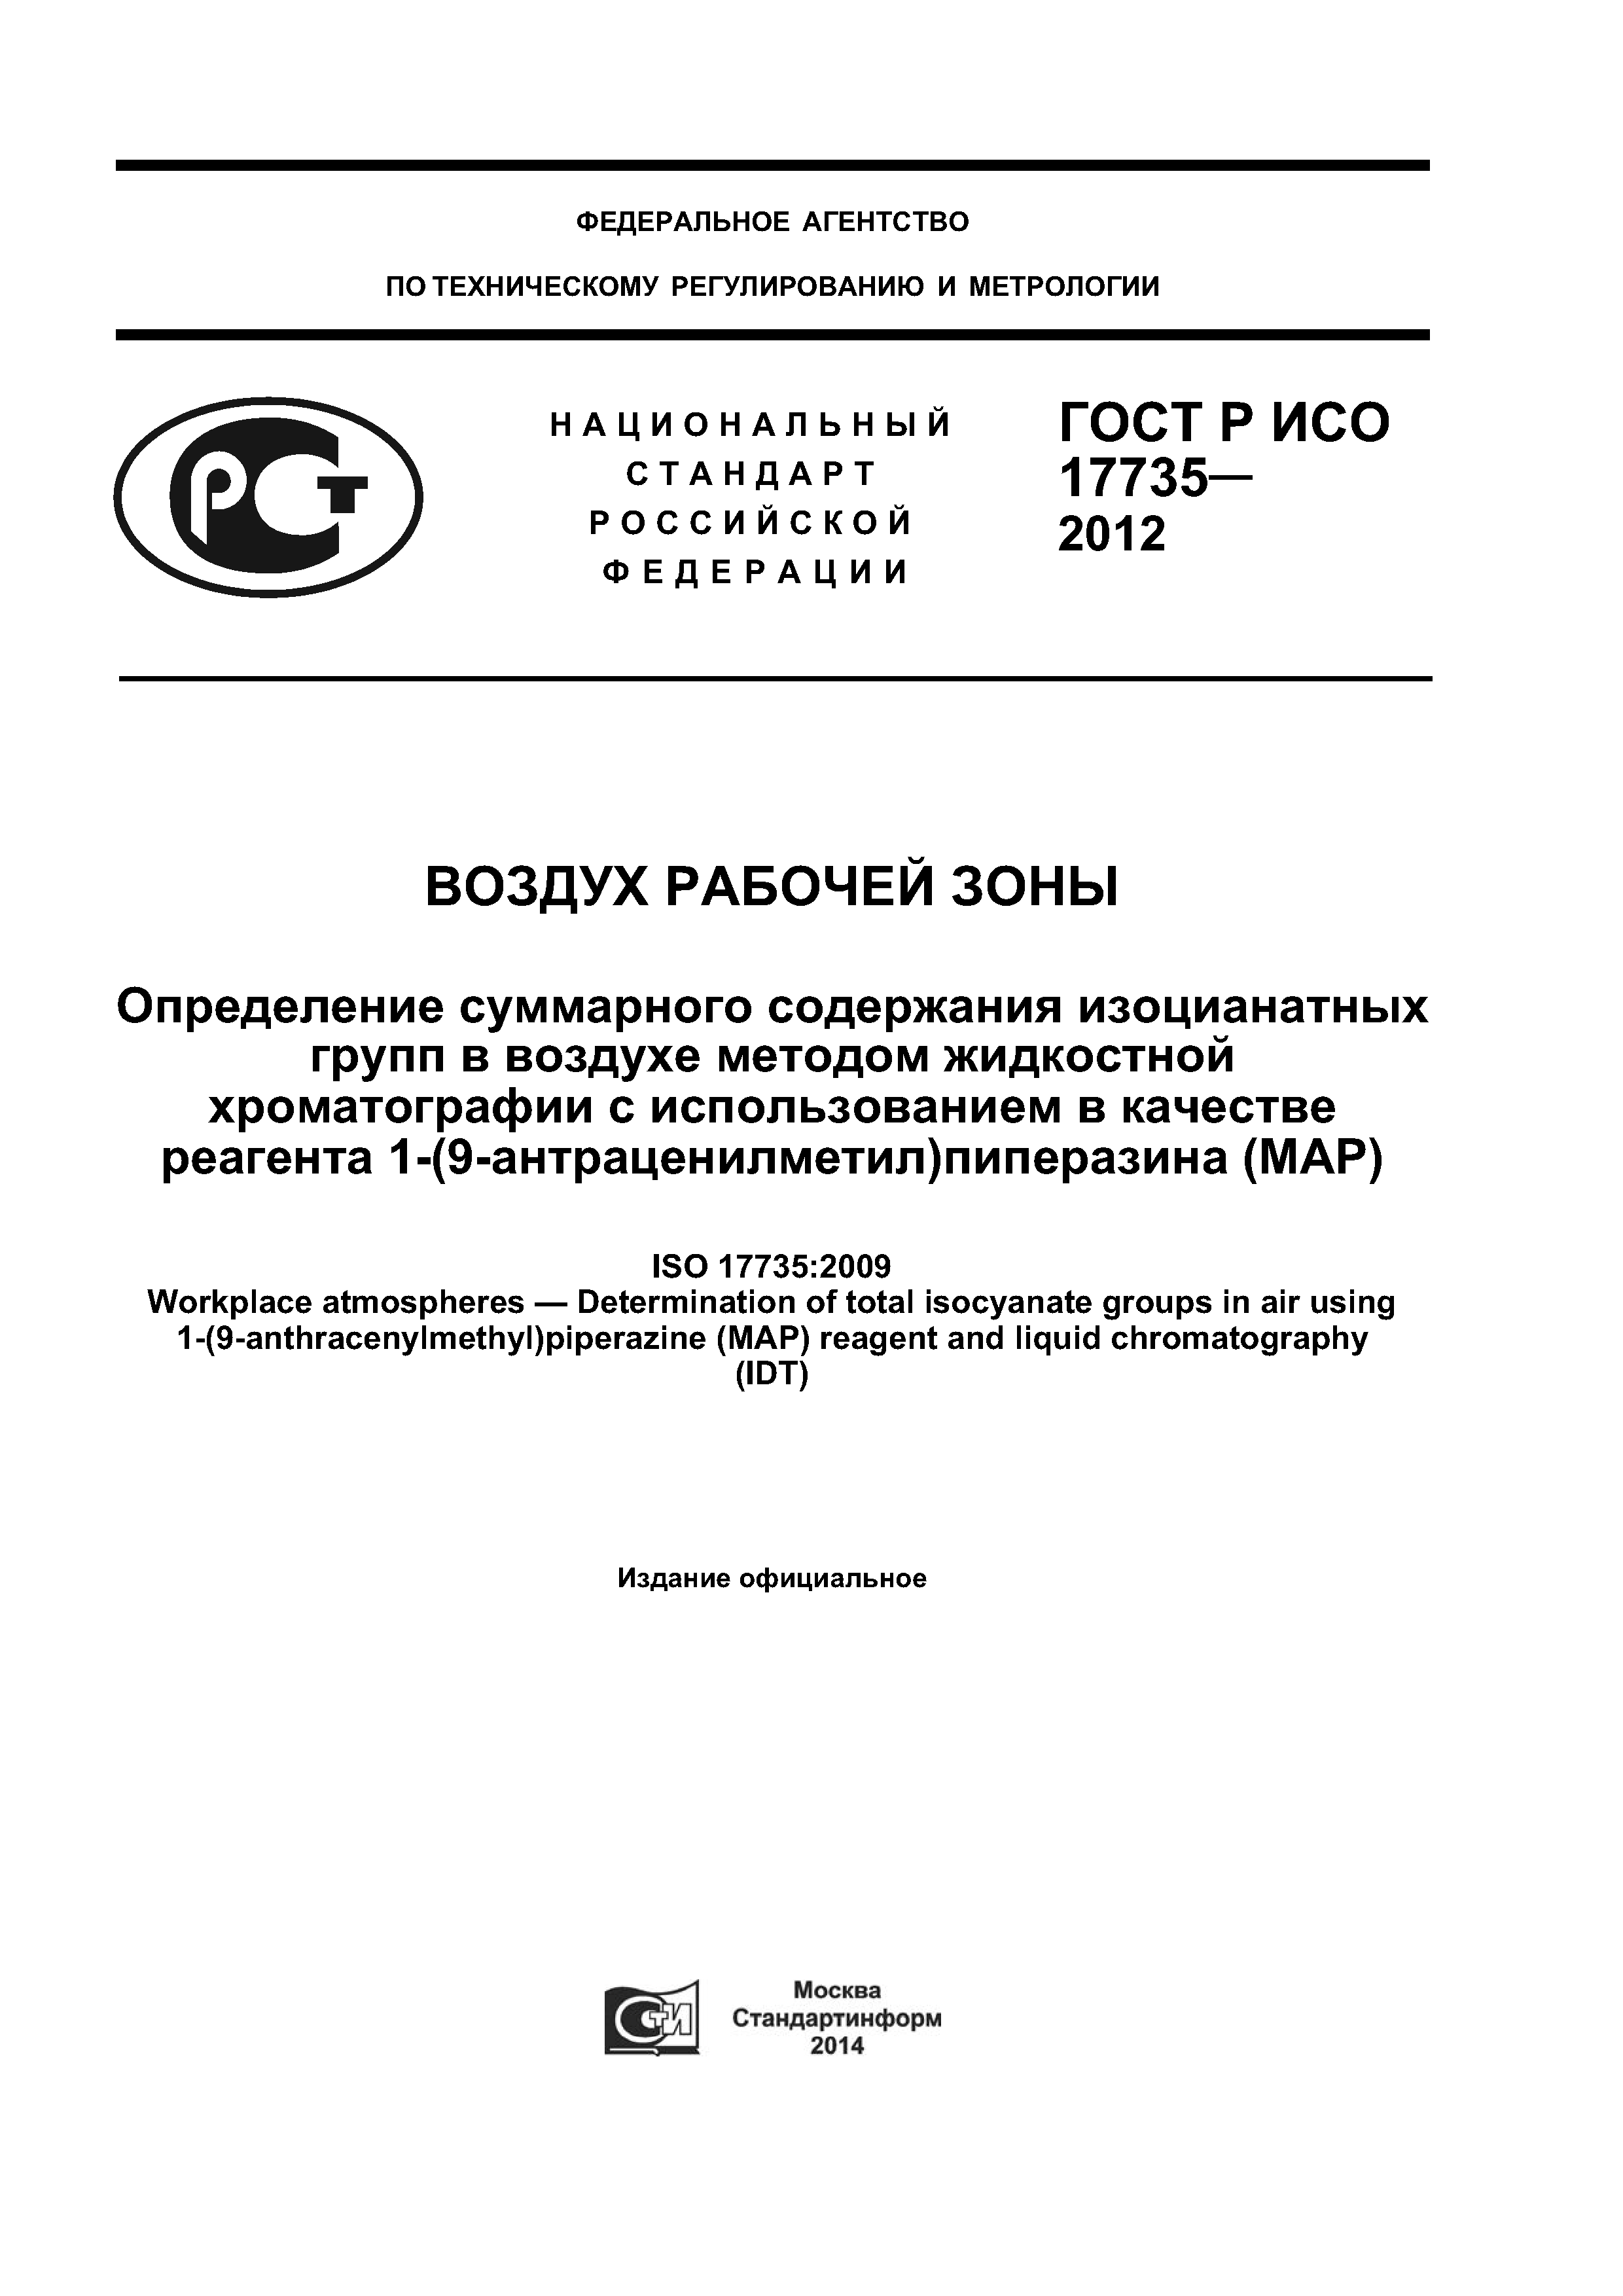 ГОСТ Р ИСО 17735-2012